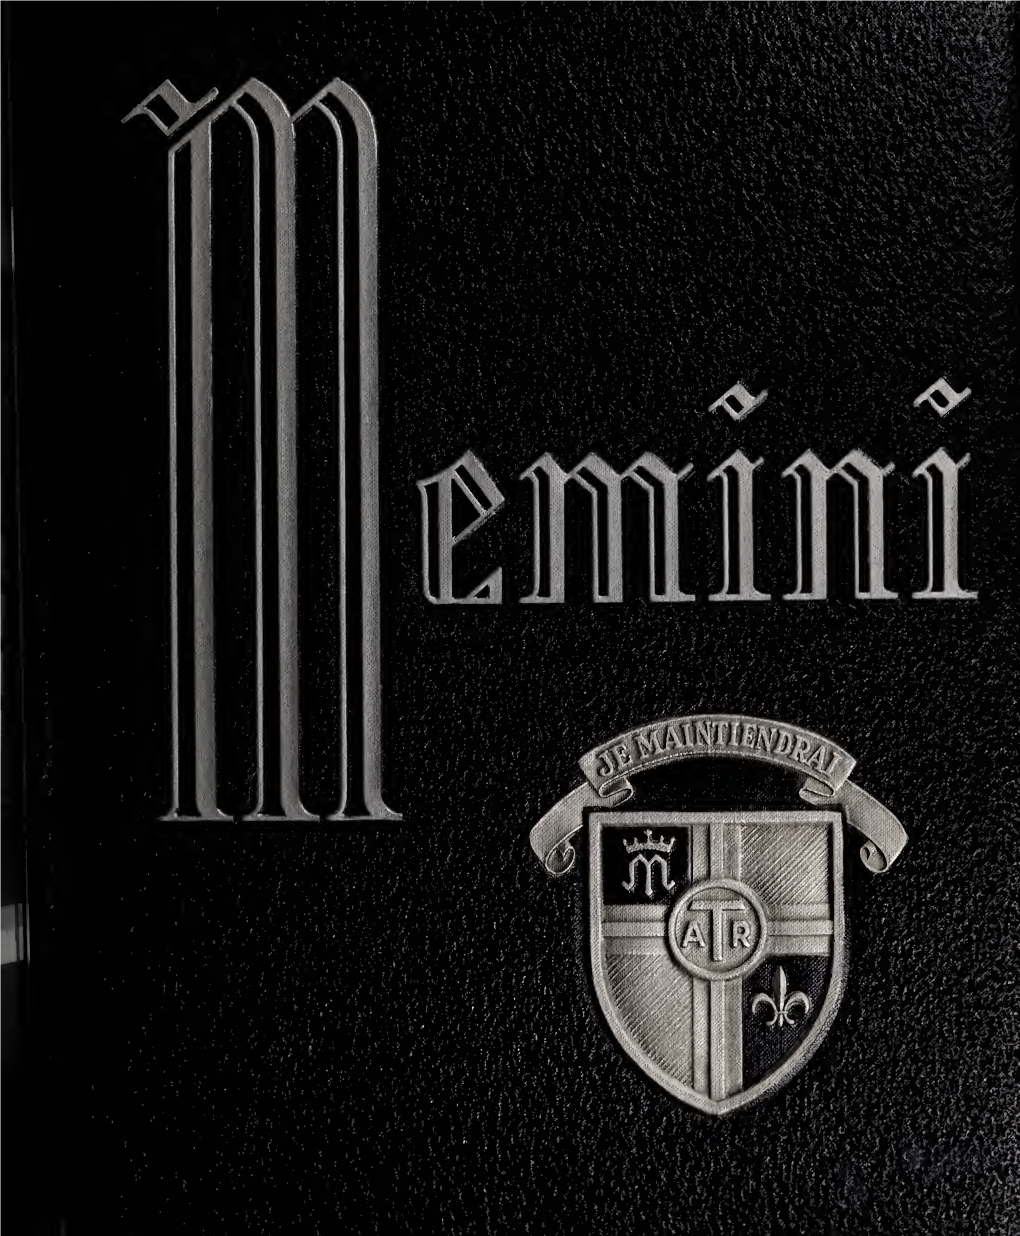 1964 Memini Yearbook